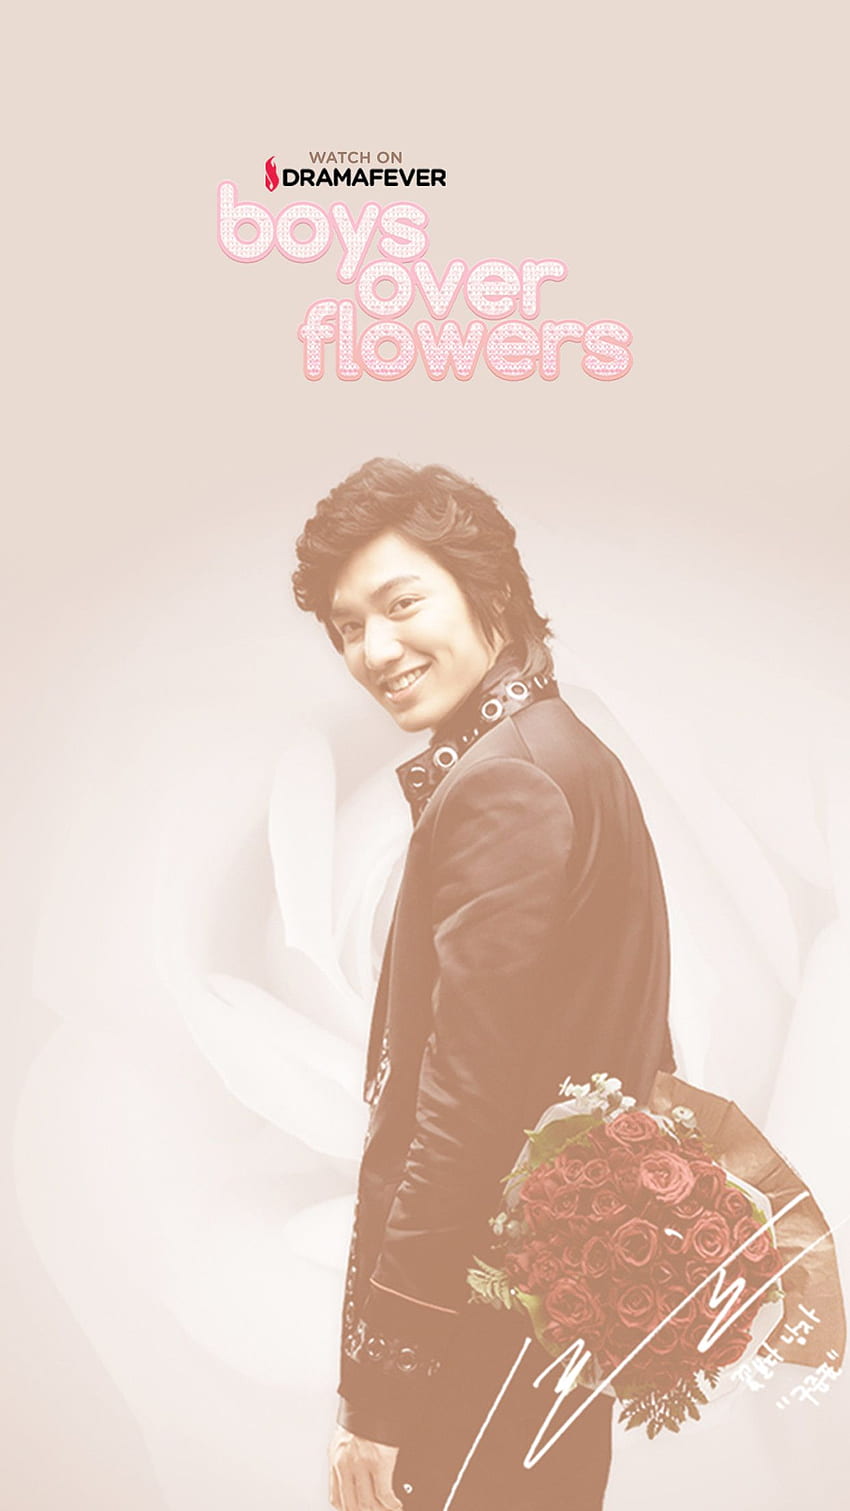 39+] Boys Over Flowers Wallpaper Download - WallpaperSafari